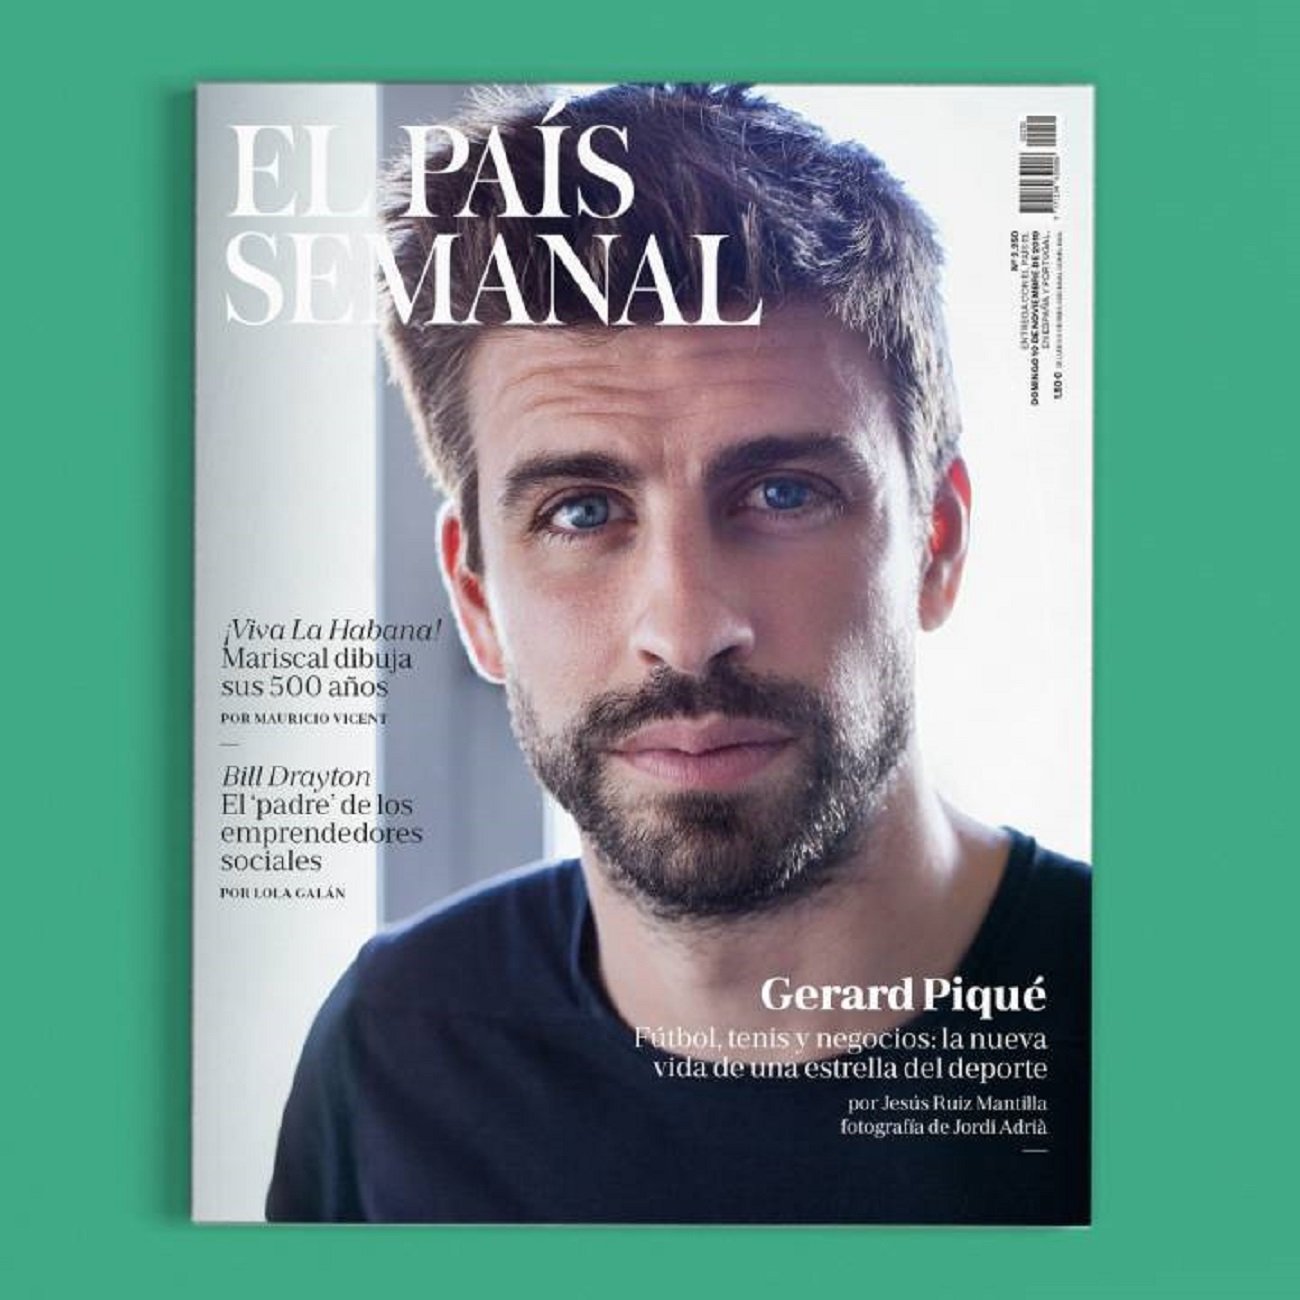 Gerard Piqué El País Semanal